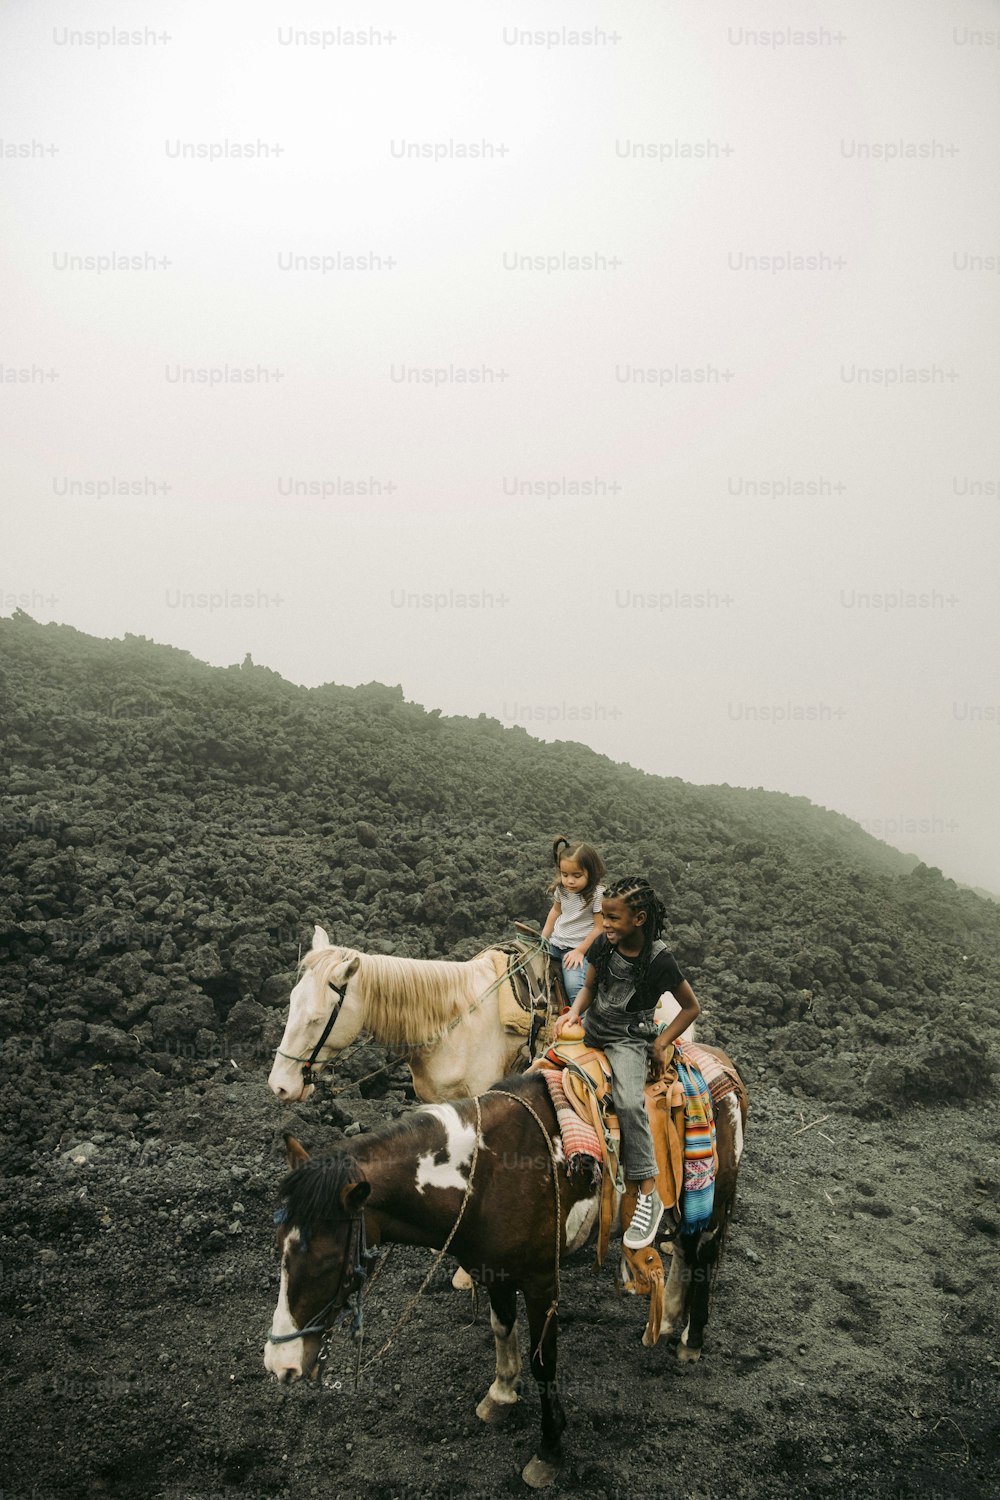 Un grupo de personas montadas a lomos de caballos